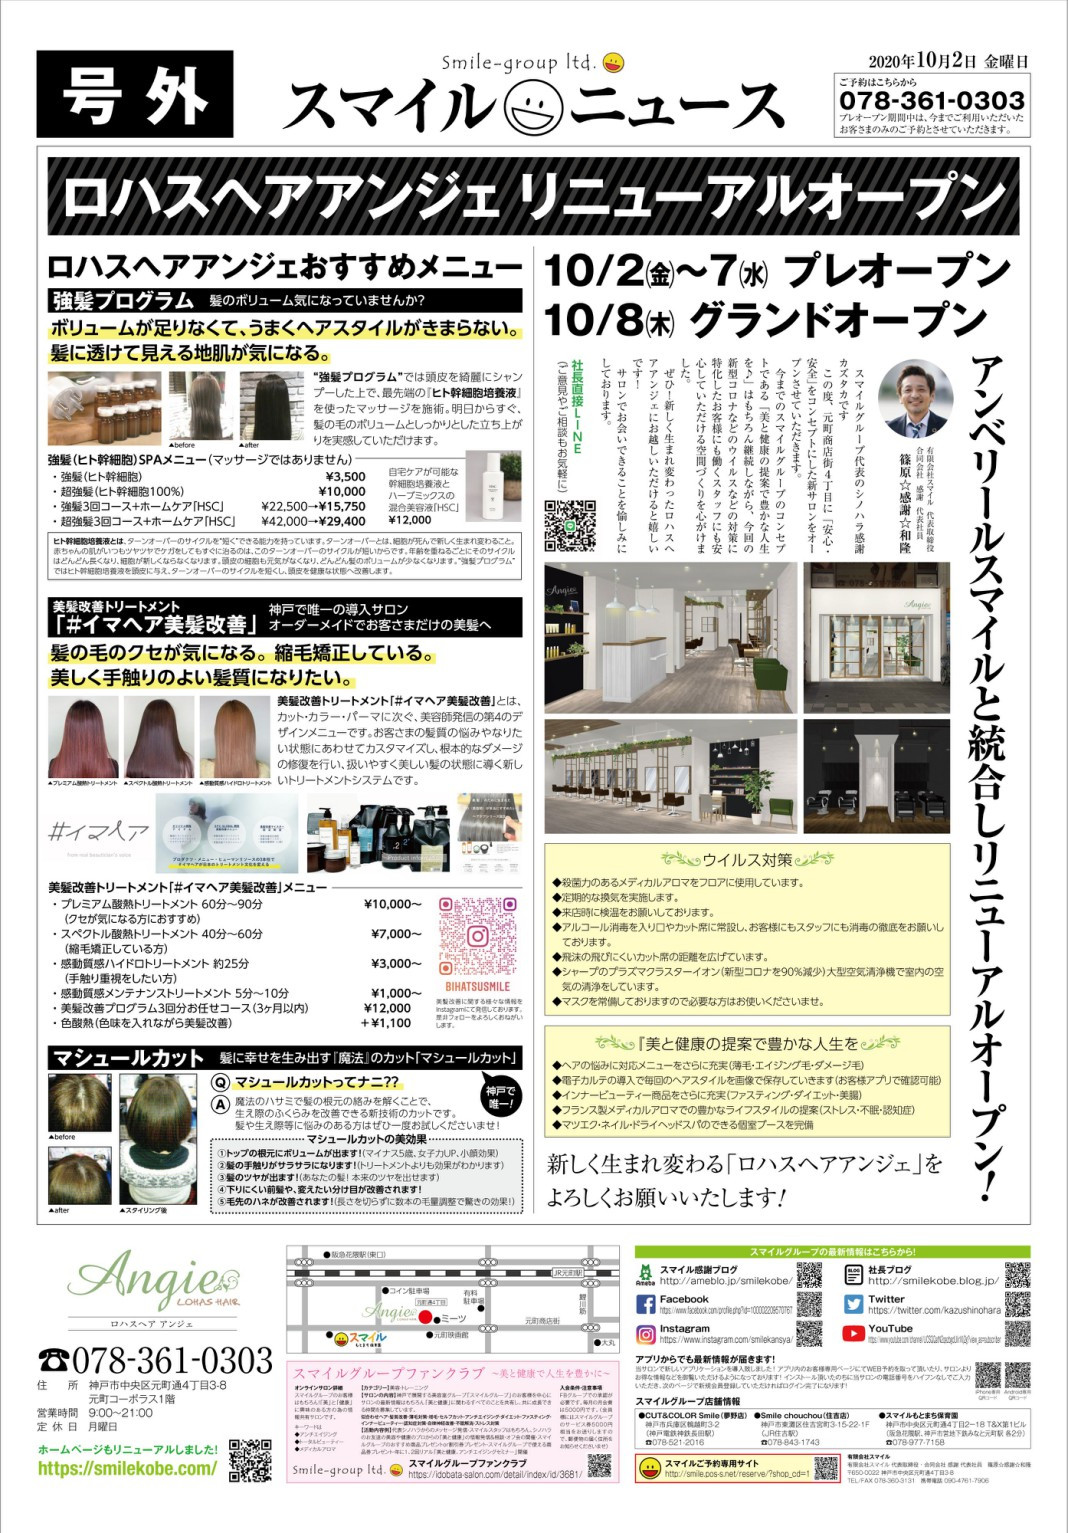 　新店舗チラシ出来ました！　神戸(元町・住吉・兵庫)のヘアサロン　美容室スマイルの新店舗情報